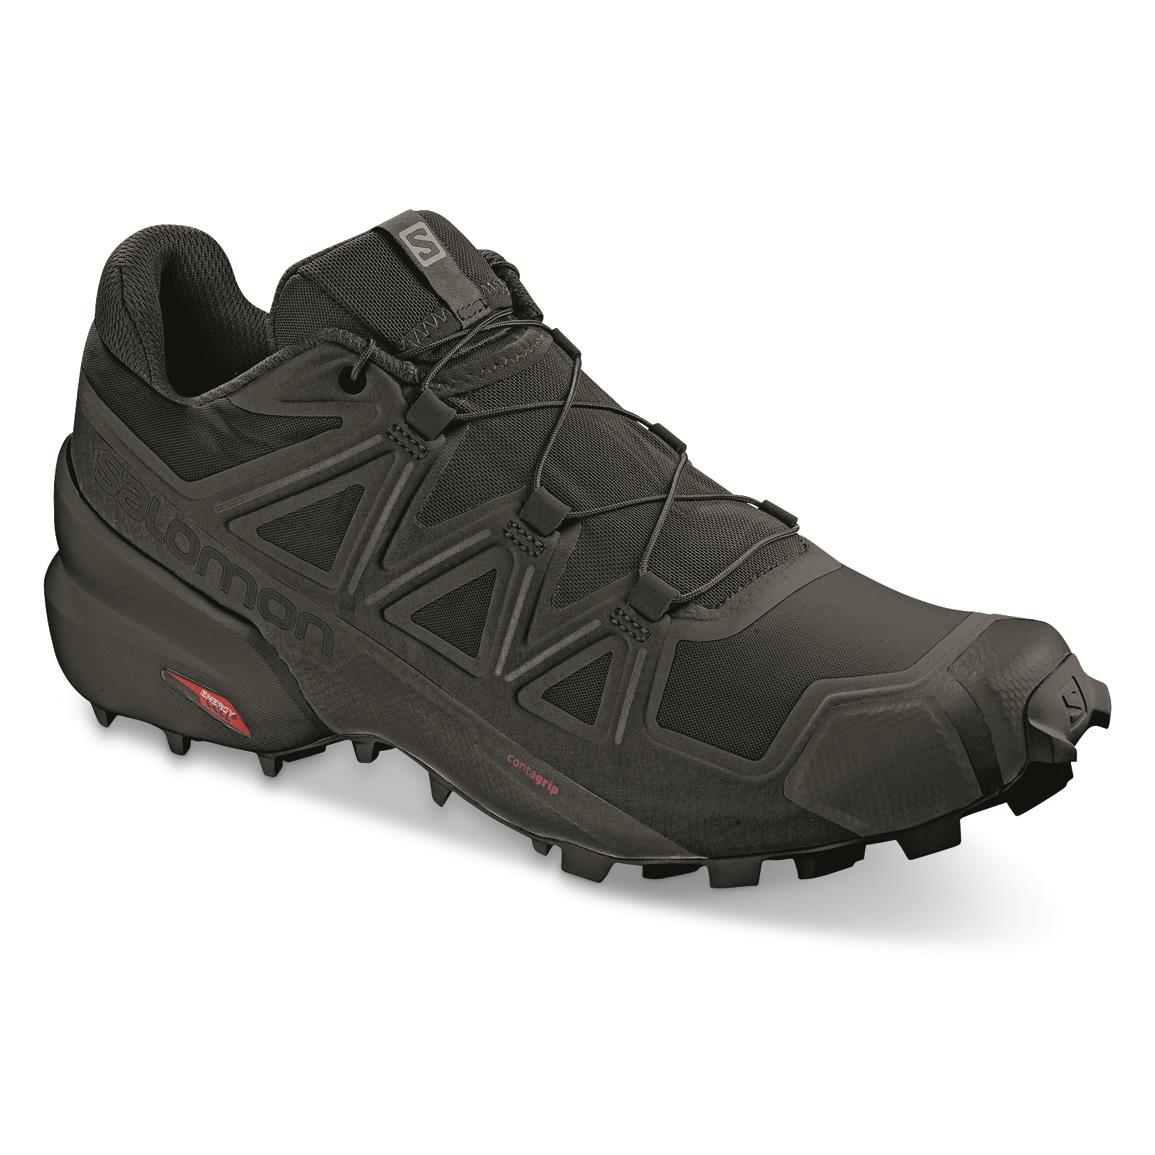 Salomon Men's Speedcross 5 Trail Running Shoes, Black/black/phantom